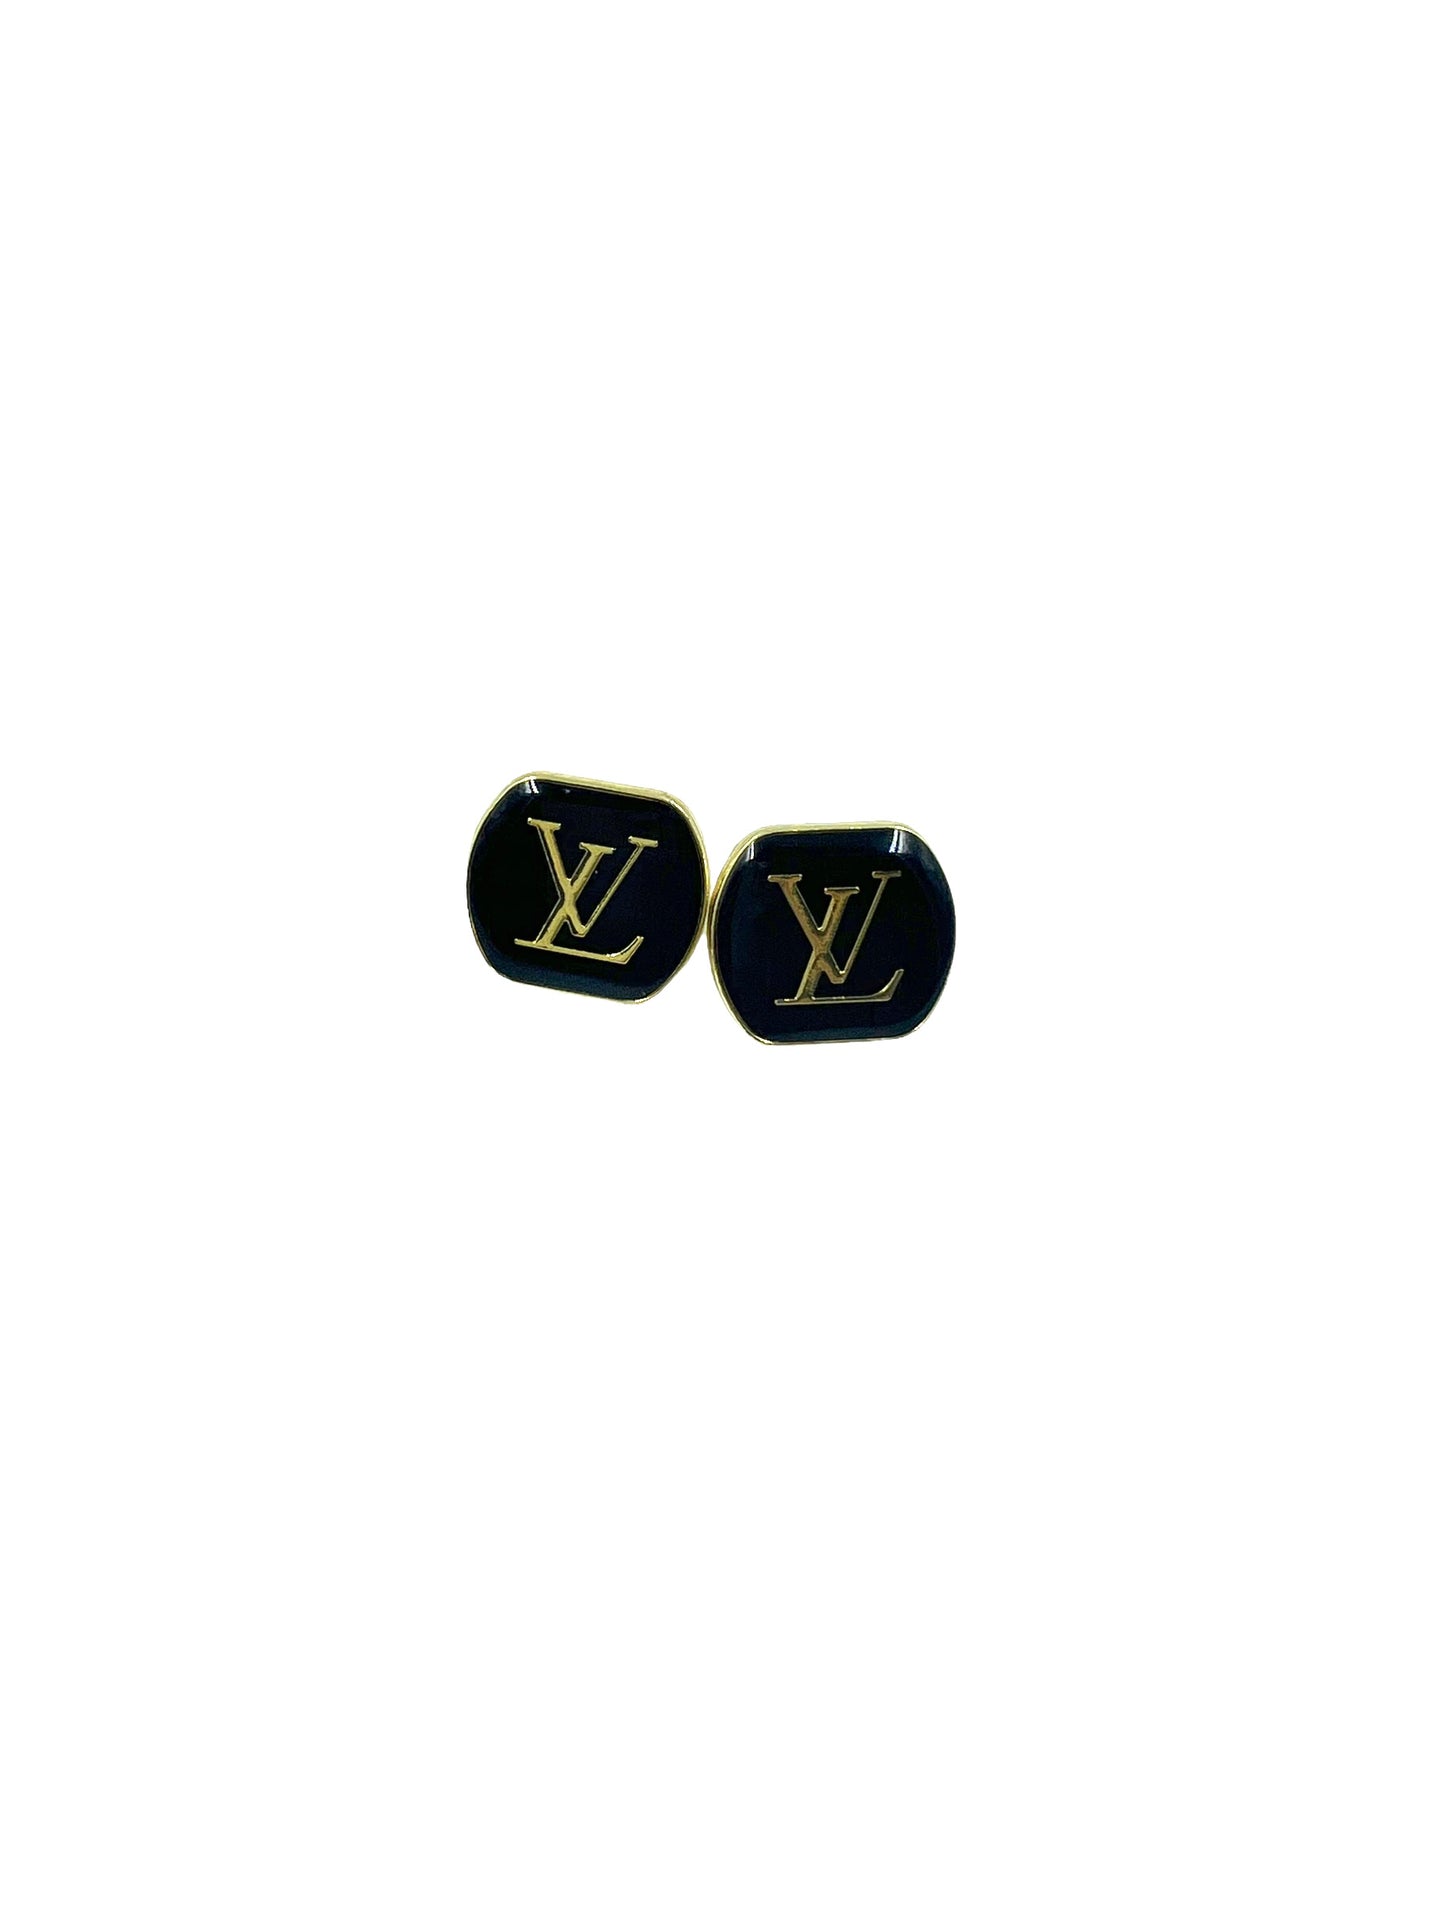 Repurposed Black Logo Stud Earrings